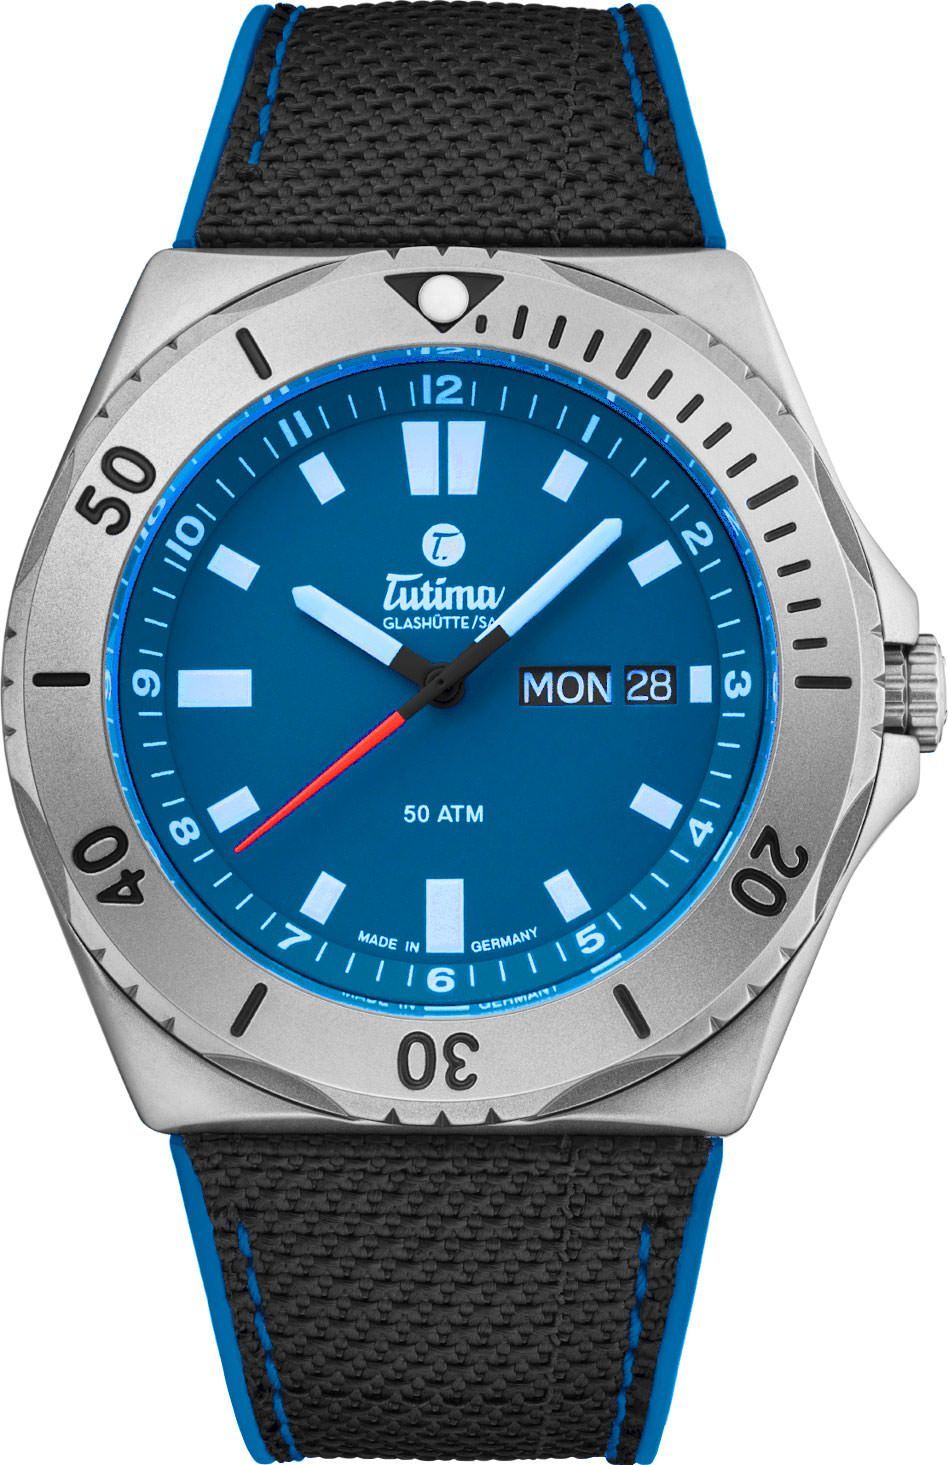 Tutima Glashütte Seven Seas 44 mm Watch in Blue Dial For Men - 1